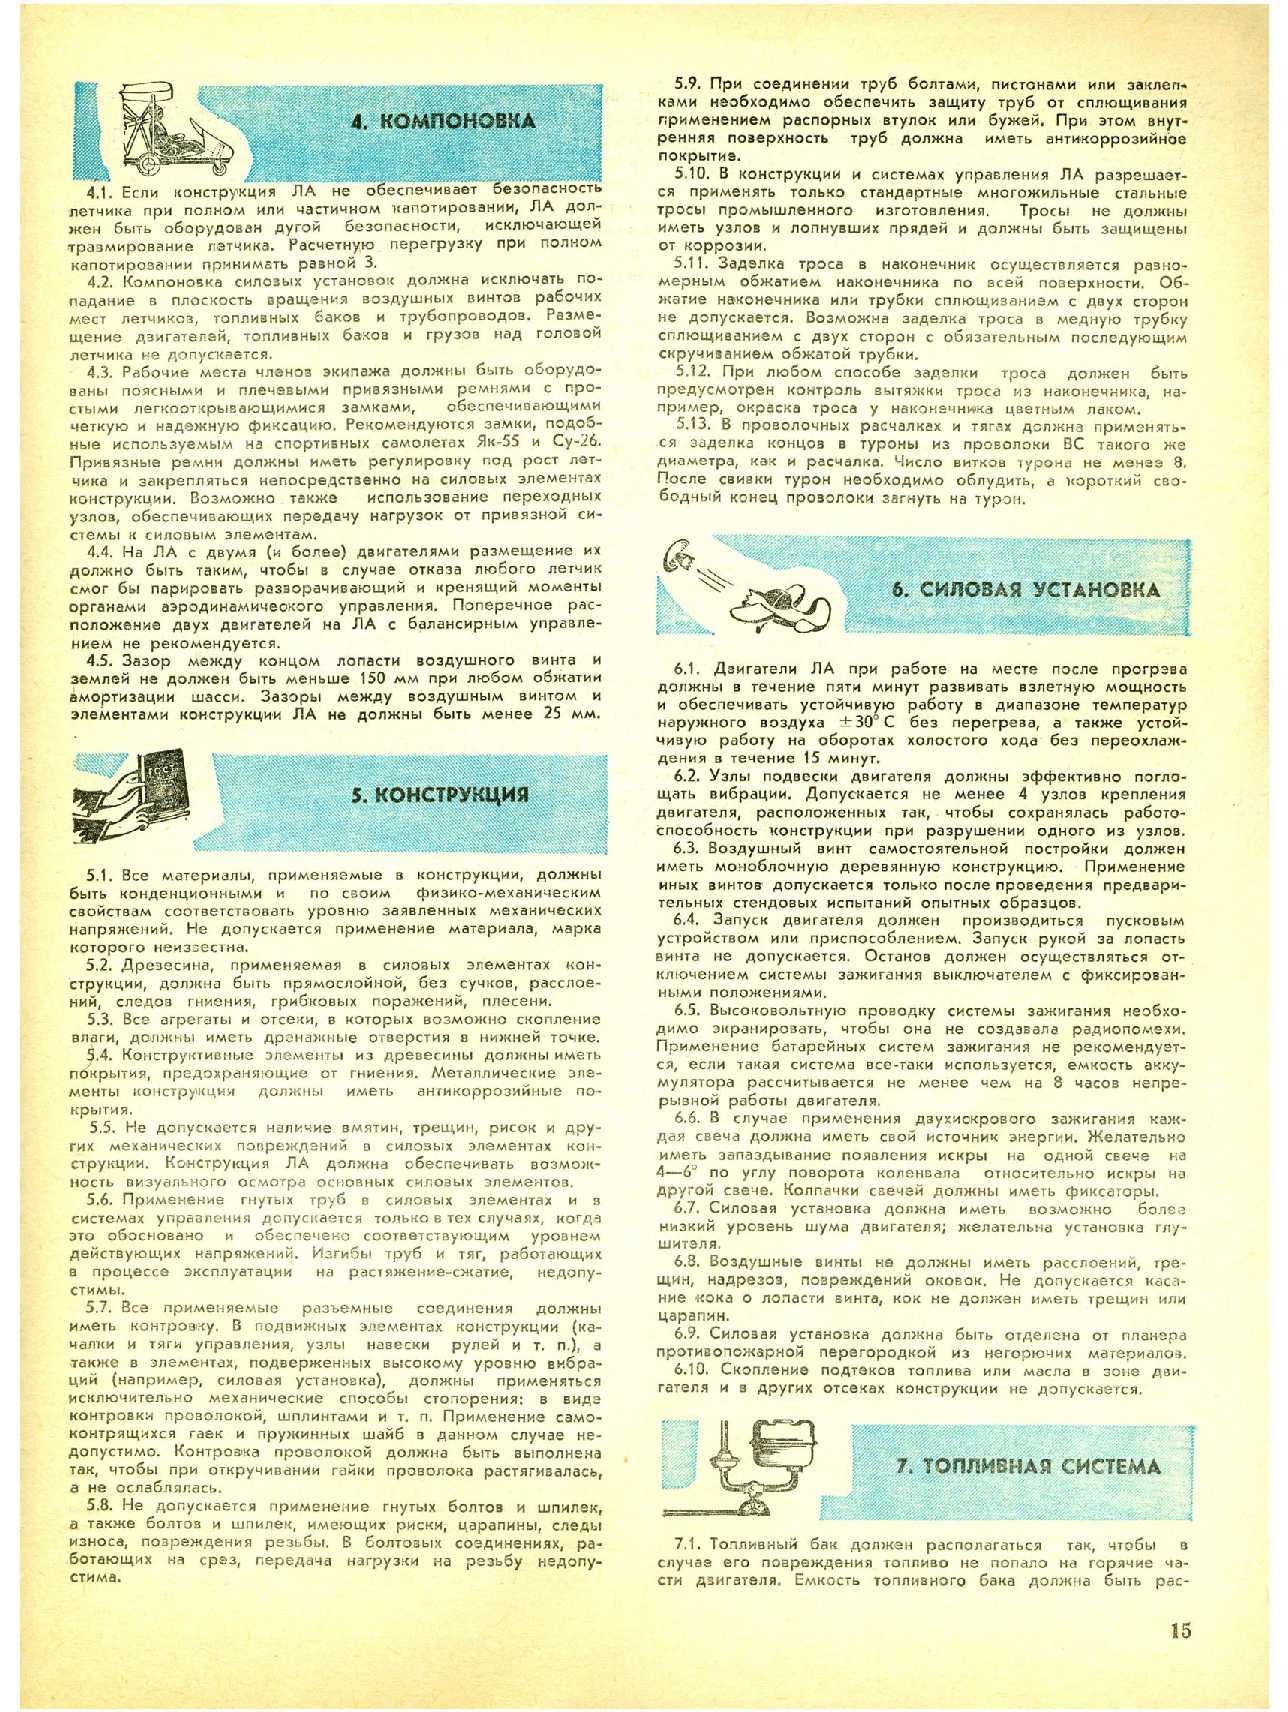 МК 9, 1988, 15 c.